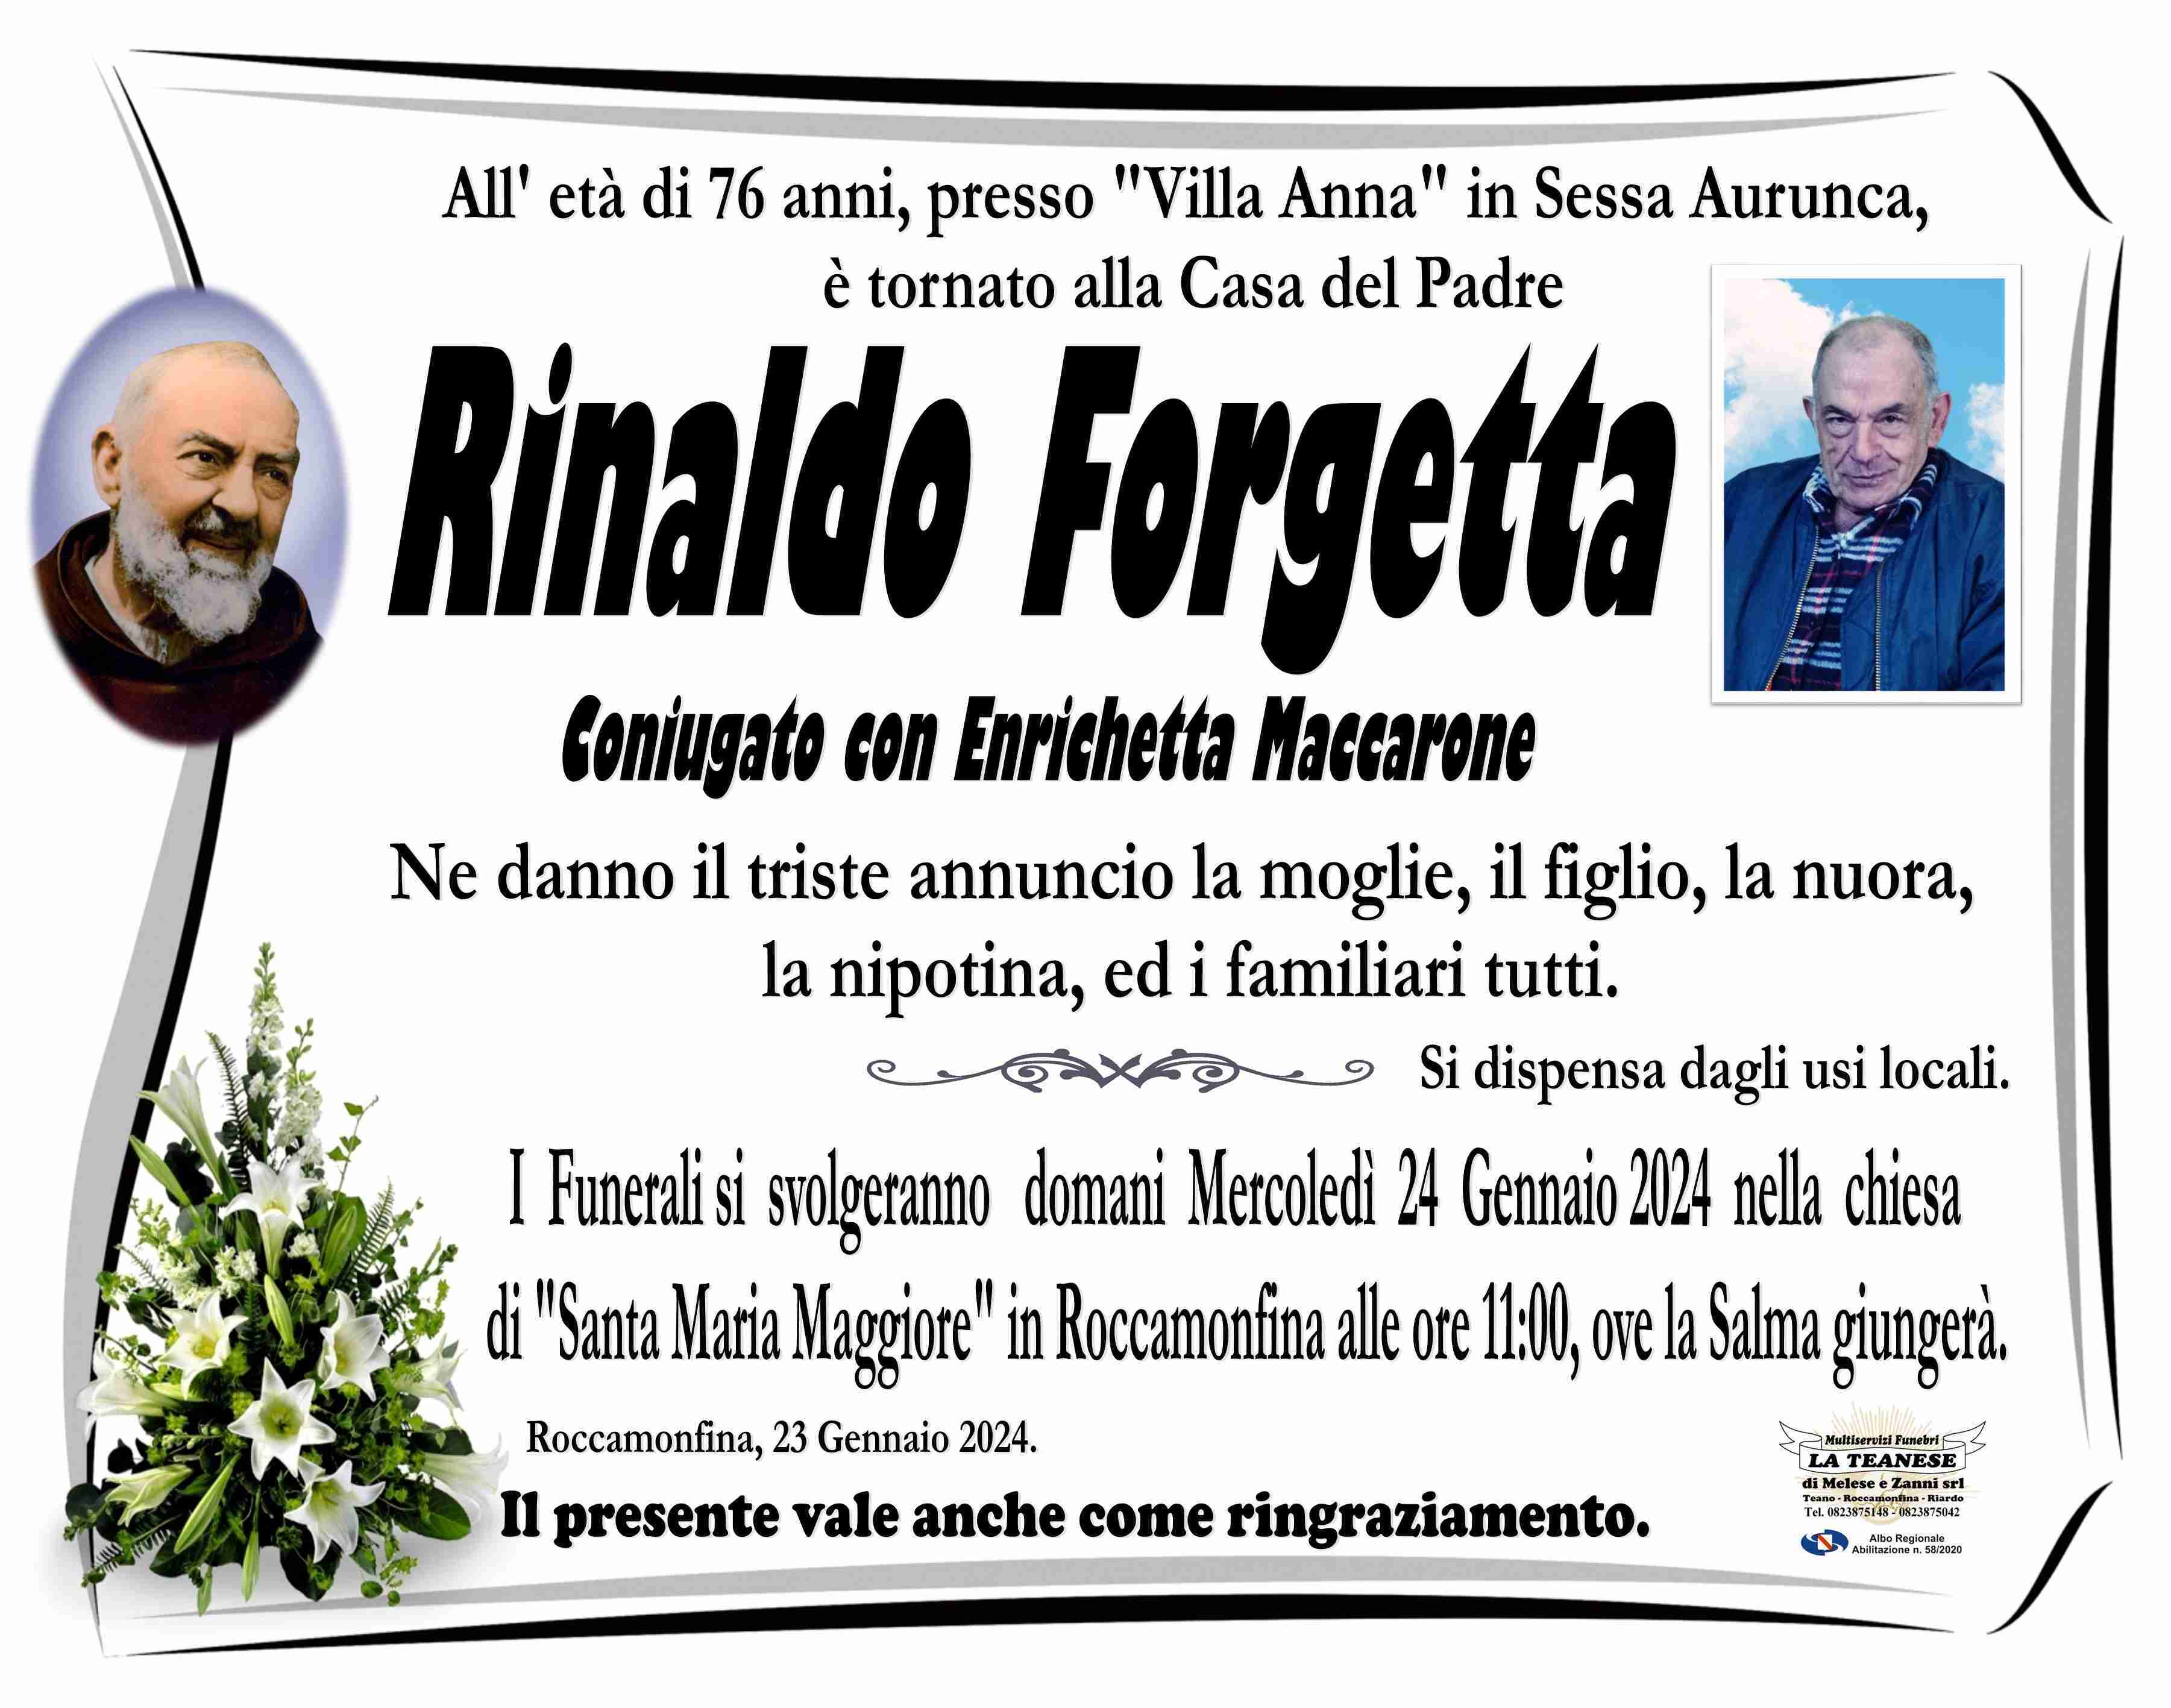 Rinaldo Forgetta